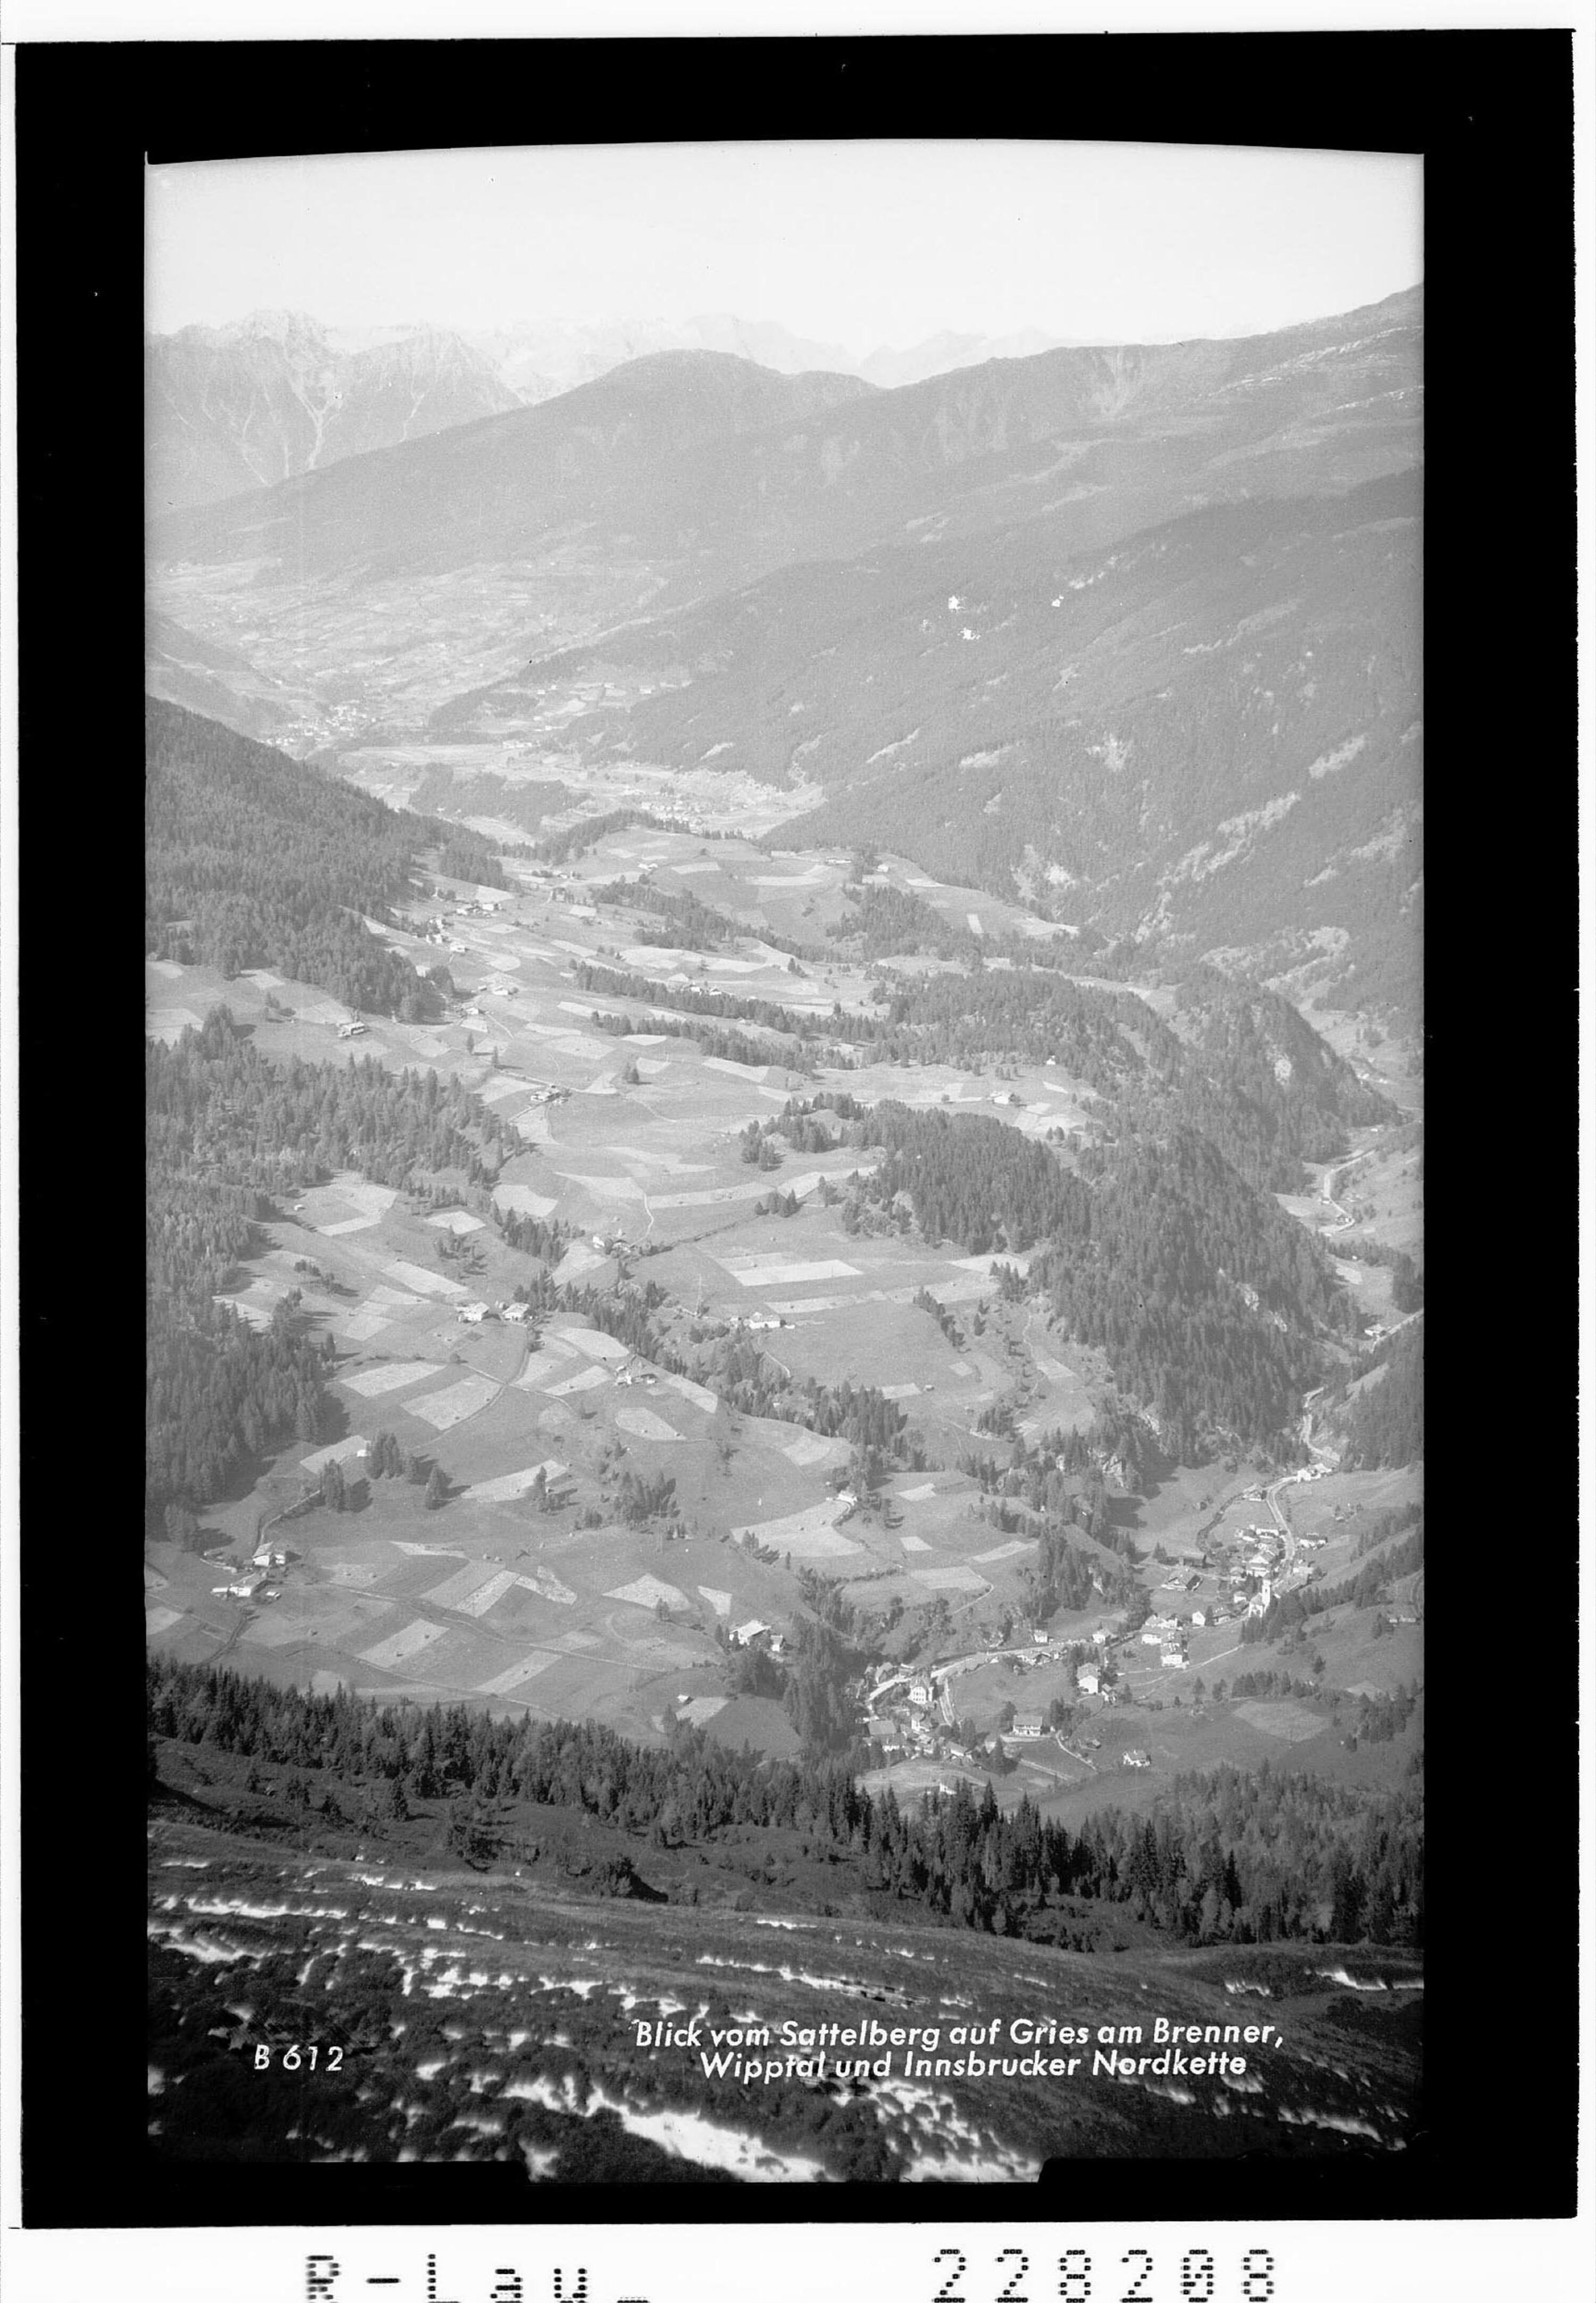 Blick vom Sattelberg auf Gries am Brenner - Wipptal und Innsbrucker Nordkette></div>


    <hr>
    <div class=